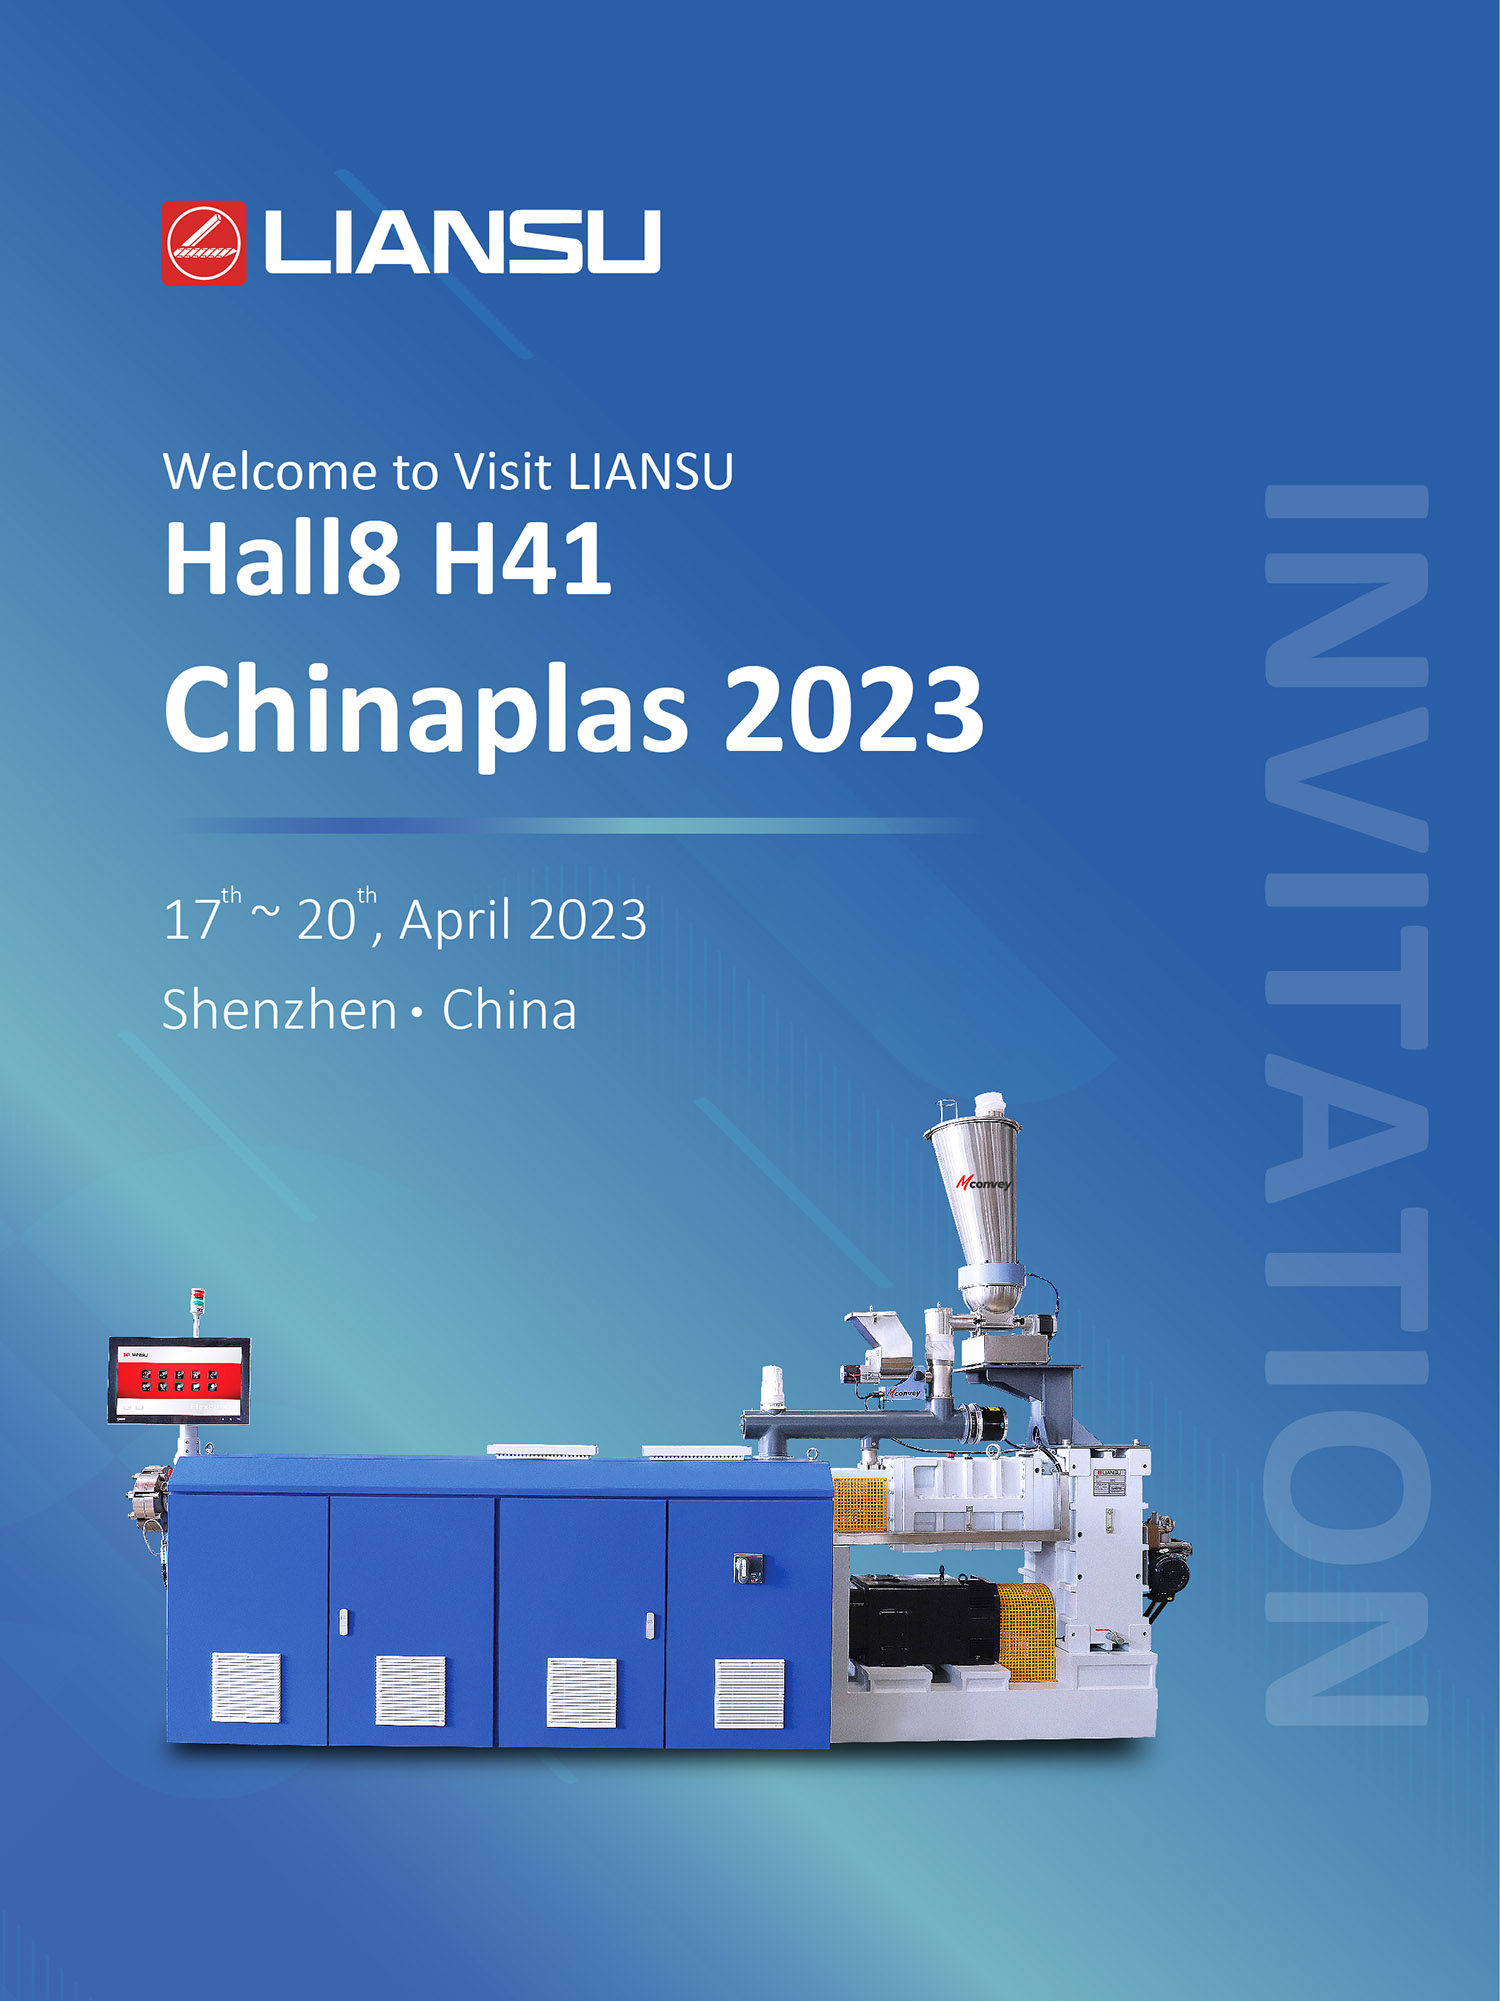 CHINAPLAS 2023丨INVITATION